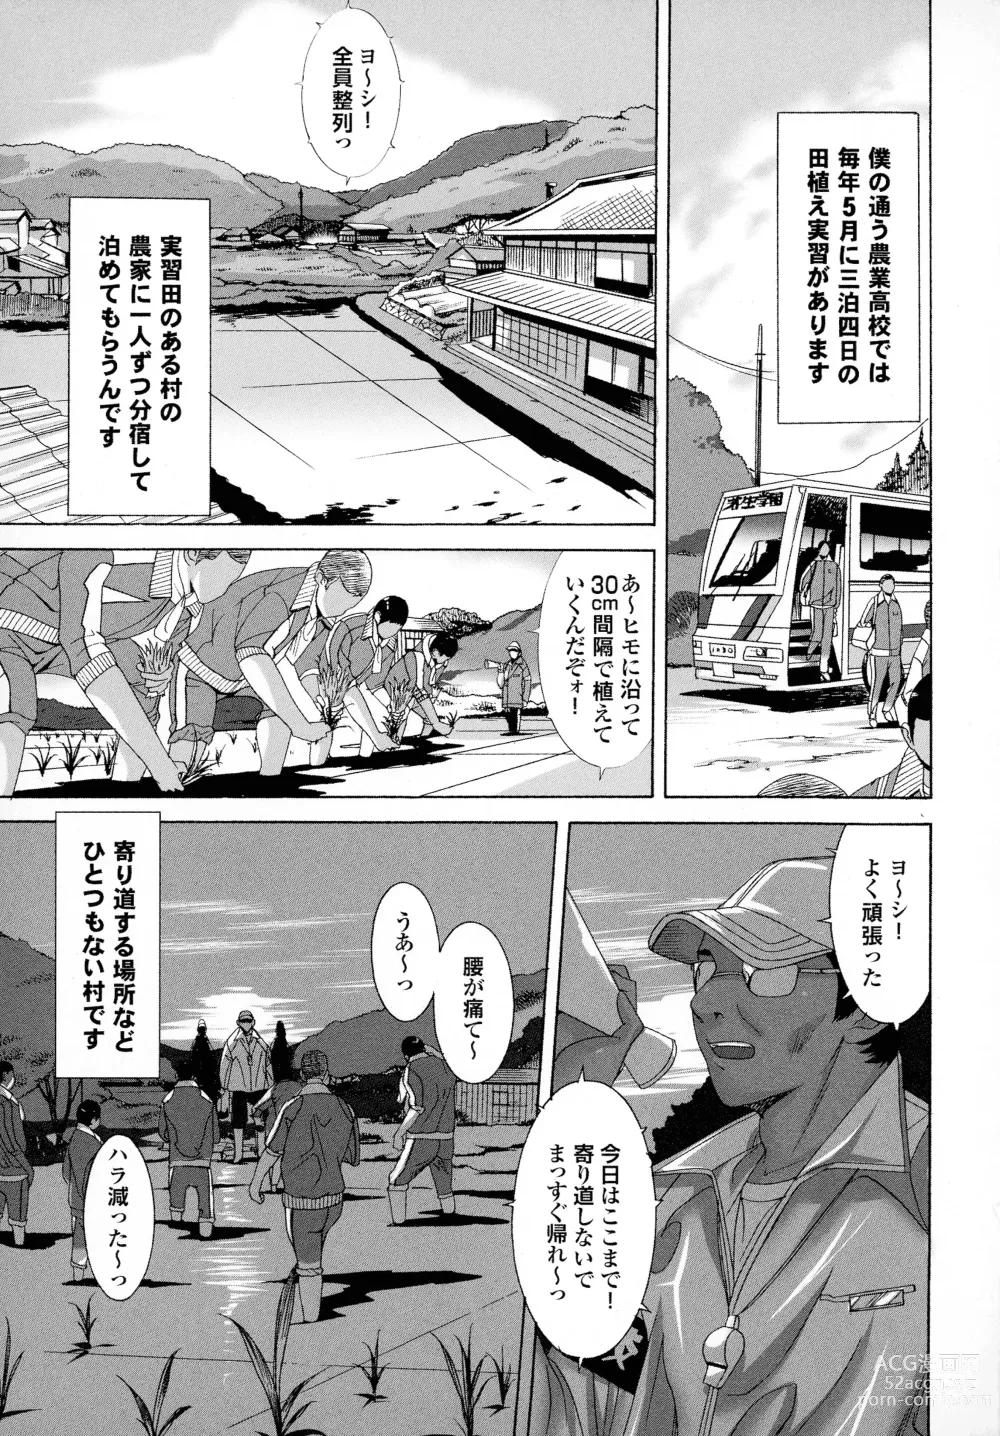 Page 159 of manga Okaa-san mo Issho